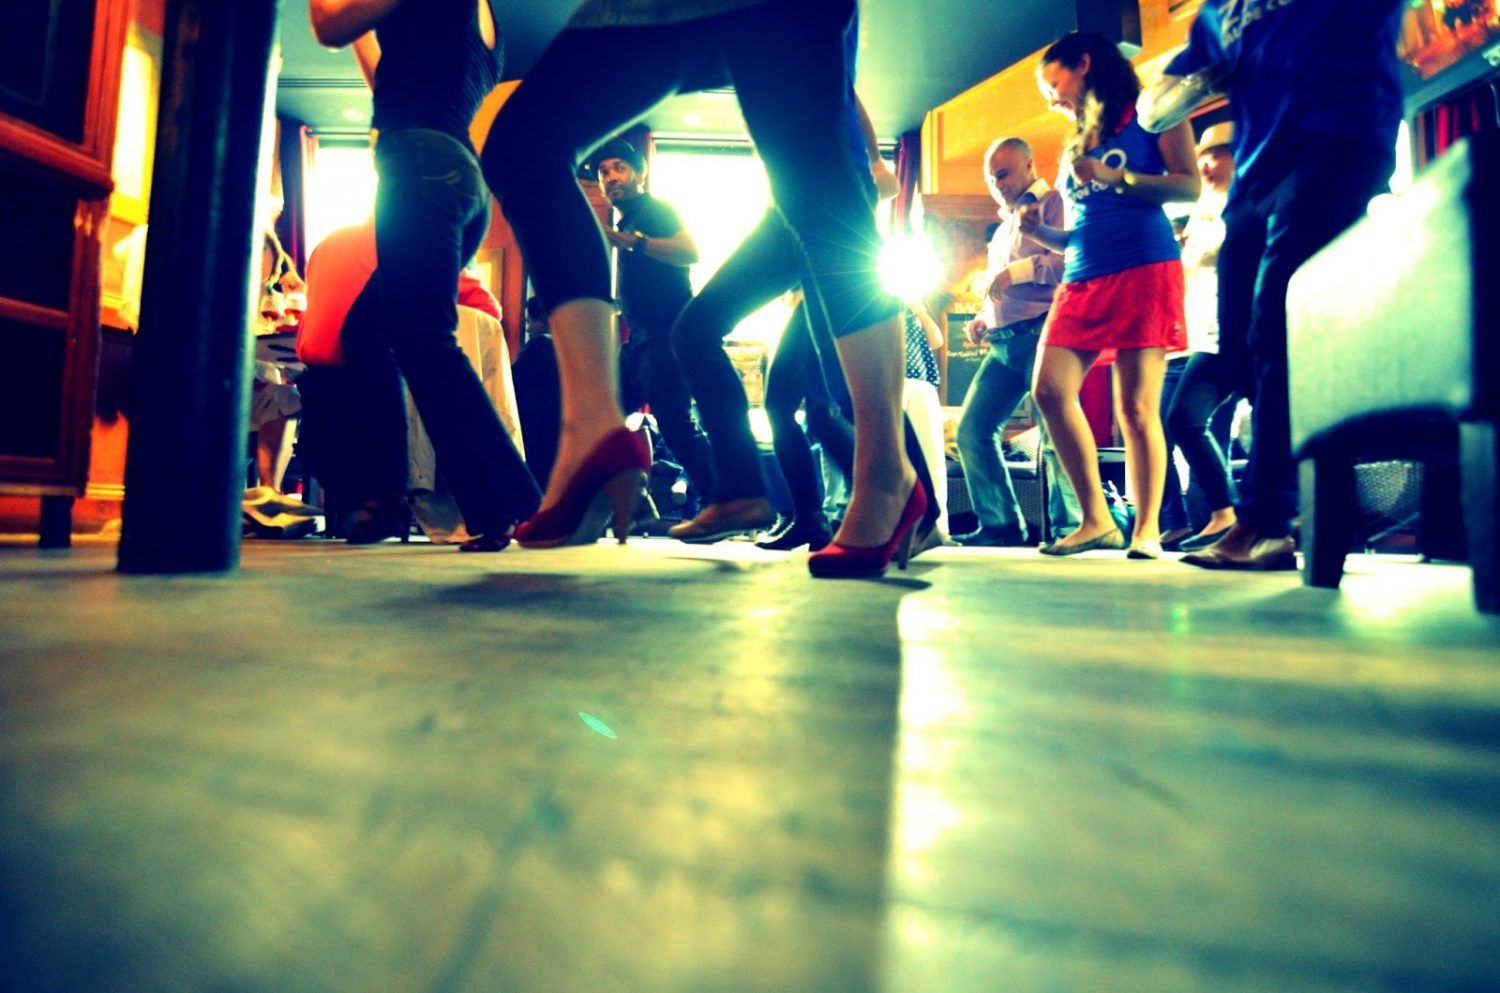 http://jamesandalex.com/wp-content/uploads/2014/11/dancing-salsa.jpg